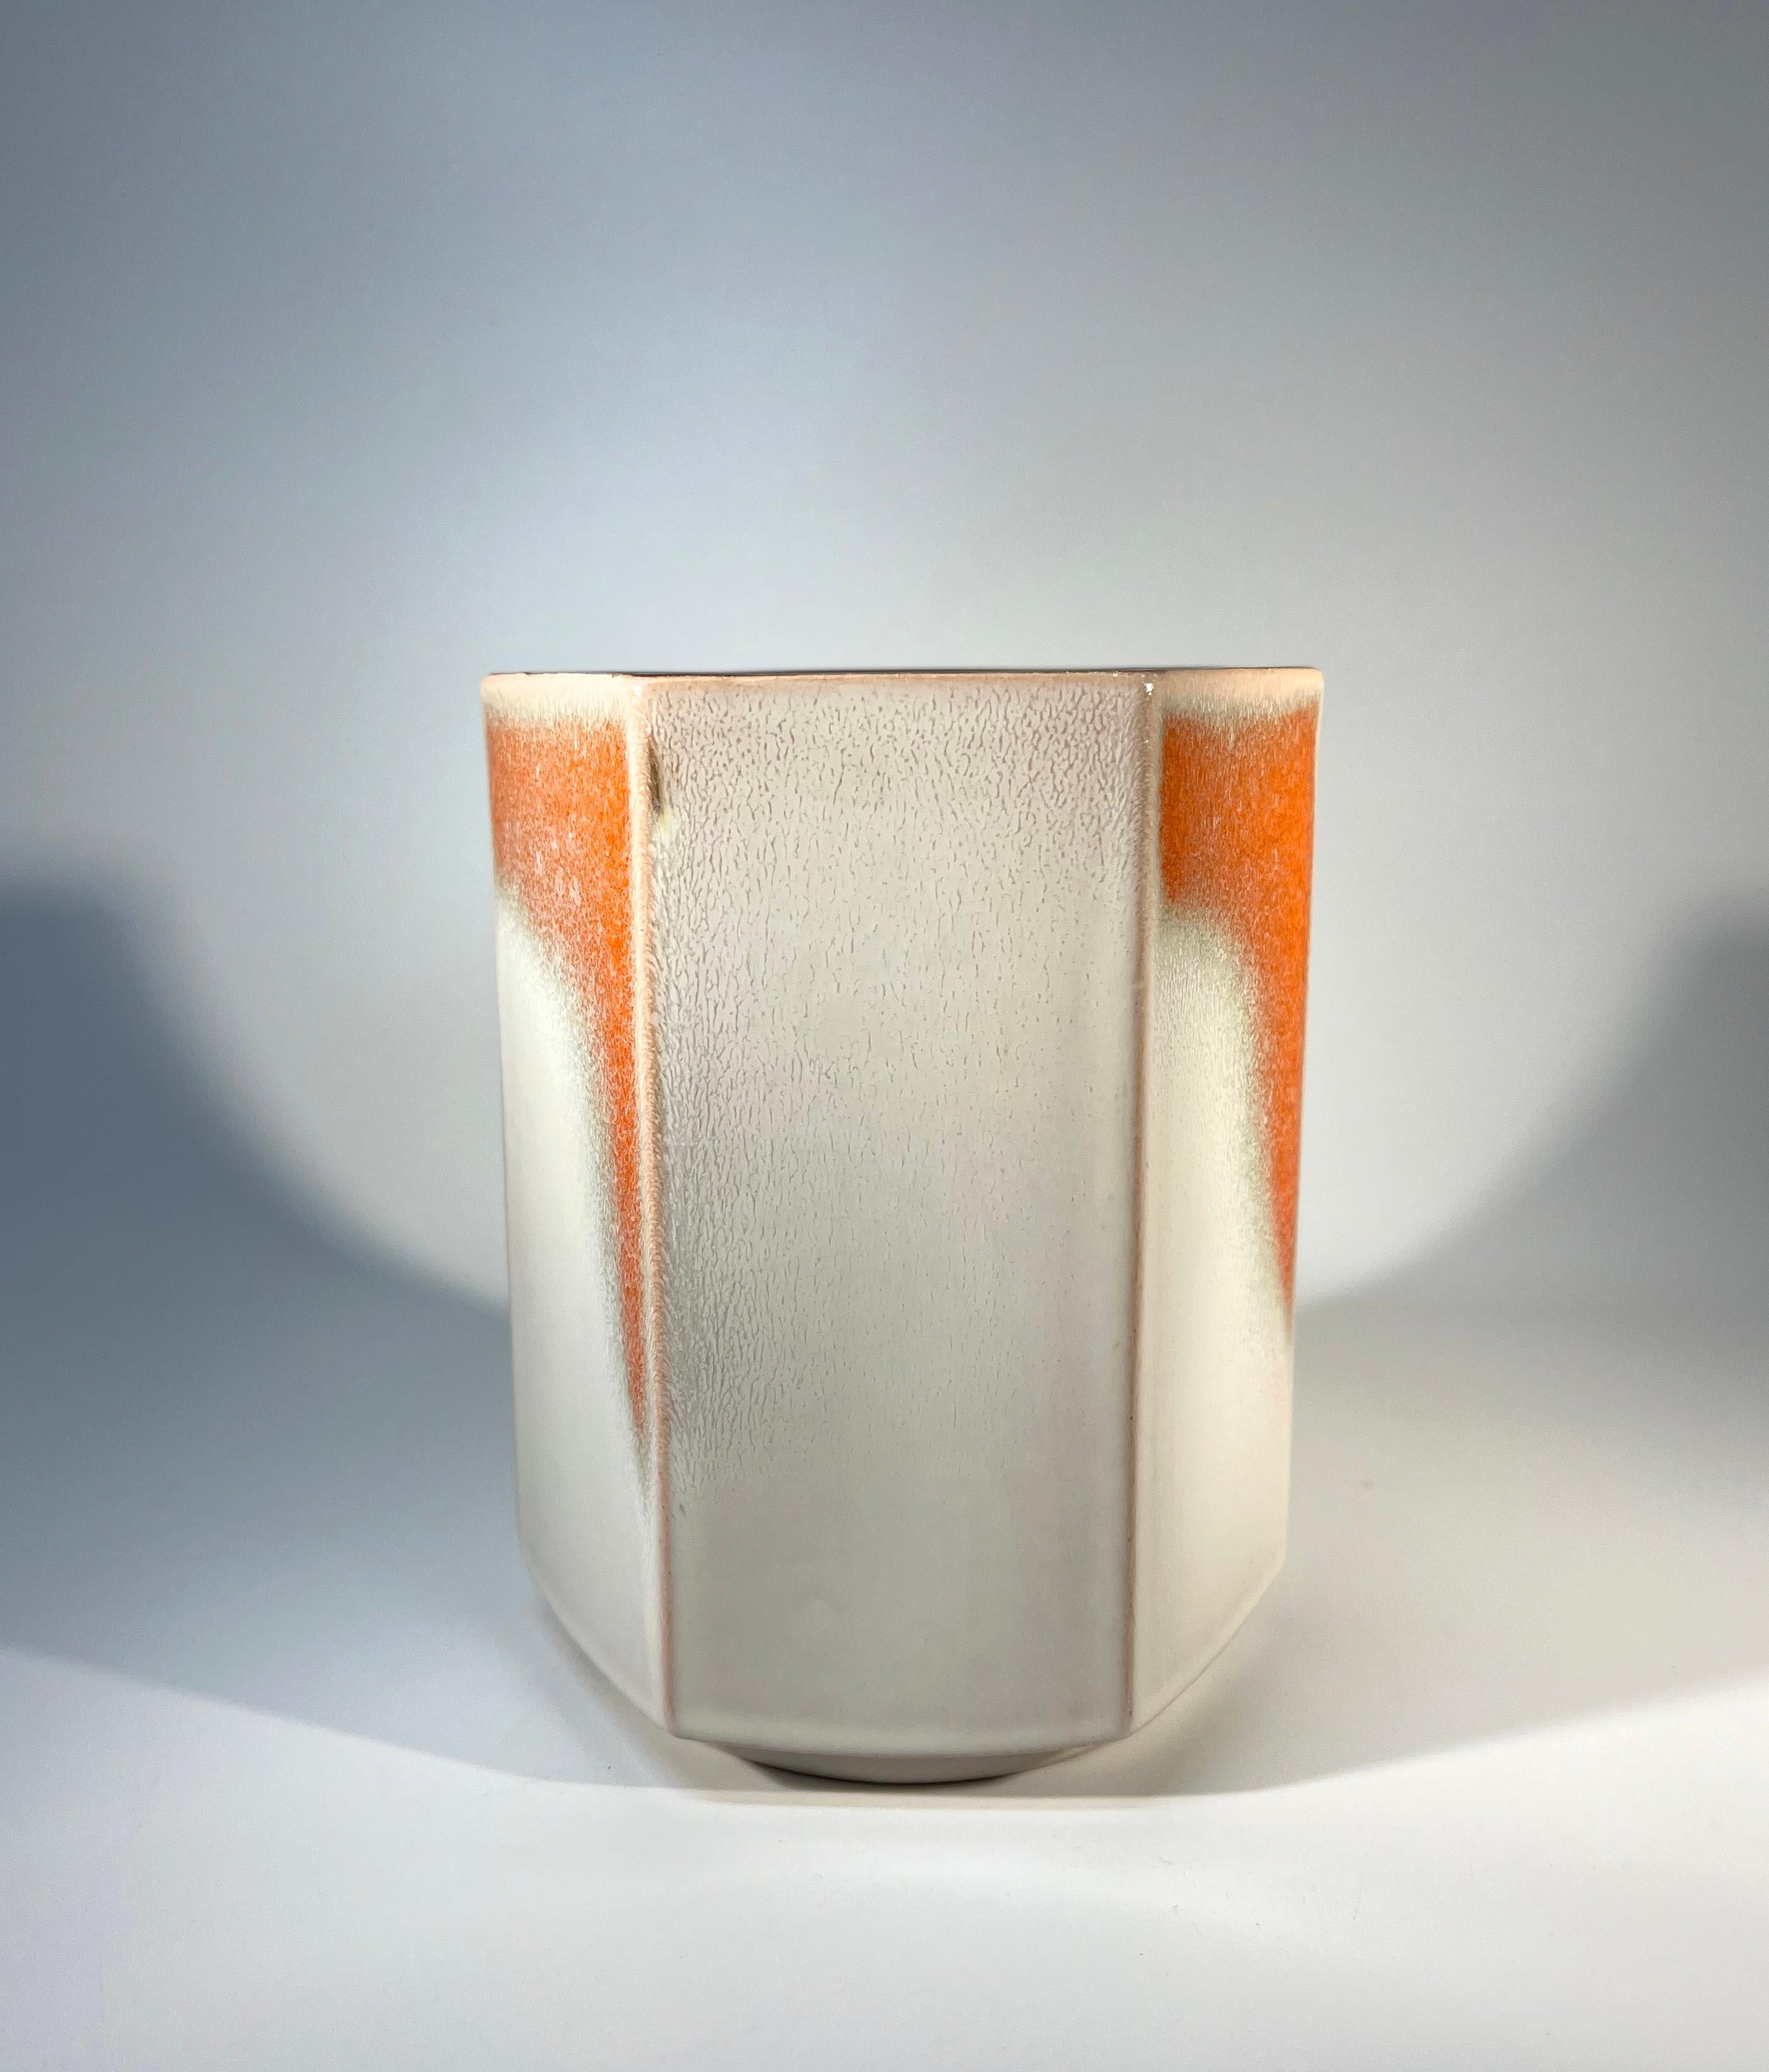 Glazed Hexagonal Ceramic Vase By Knabstrup Of Denmark, c1960 For Sale